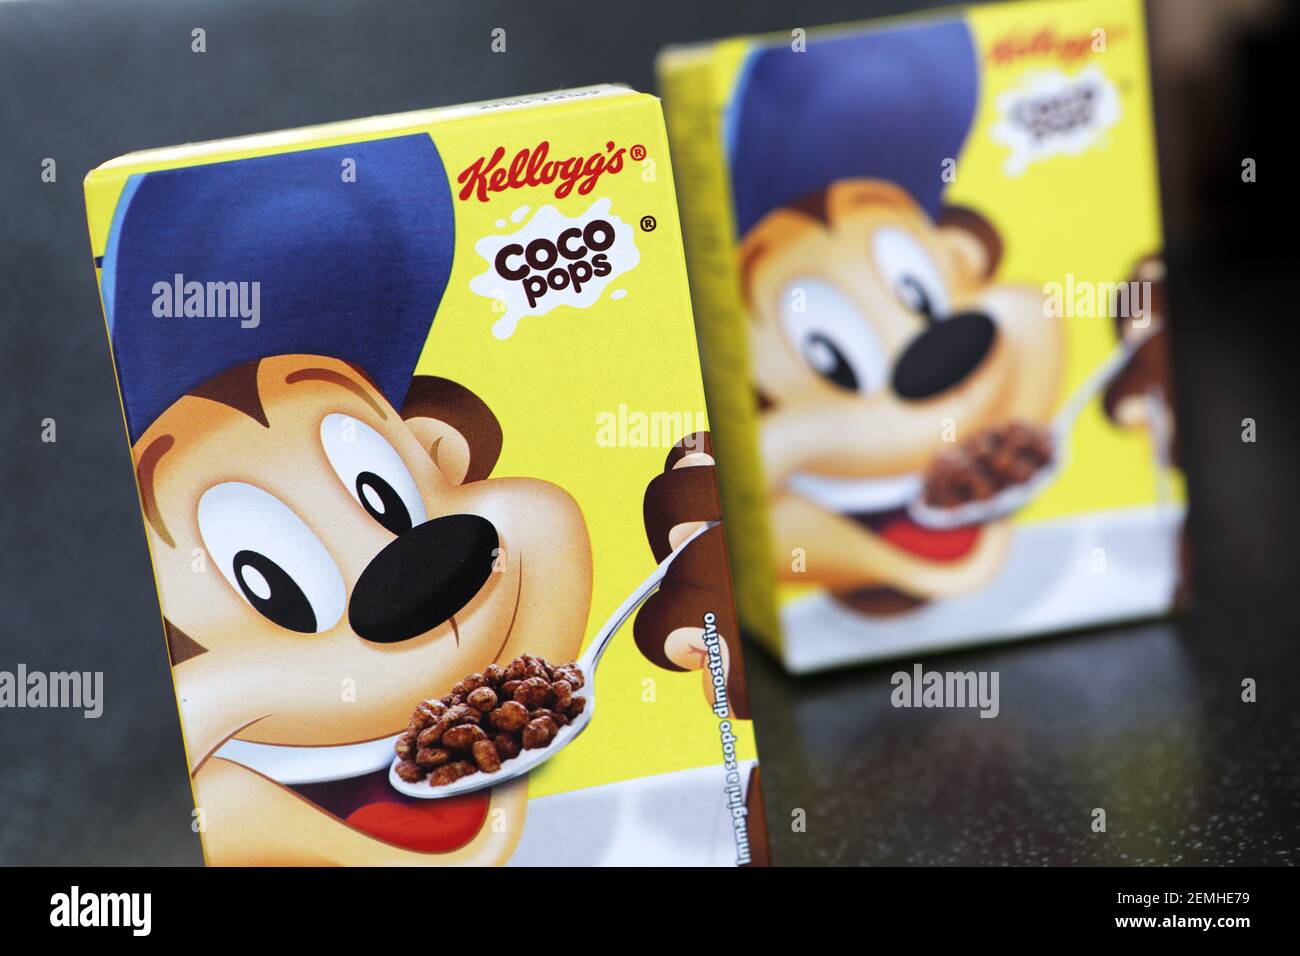 Kellogg's Coco sirve cereales de desayuno, una caja para servir Foto de stock